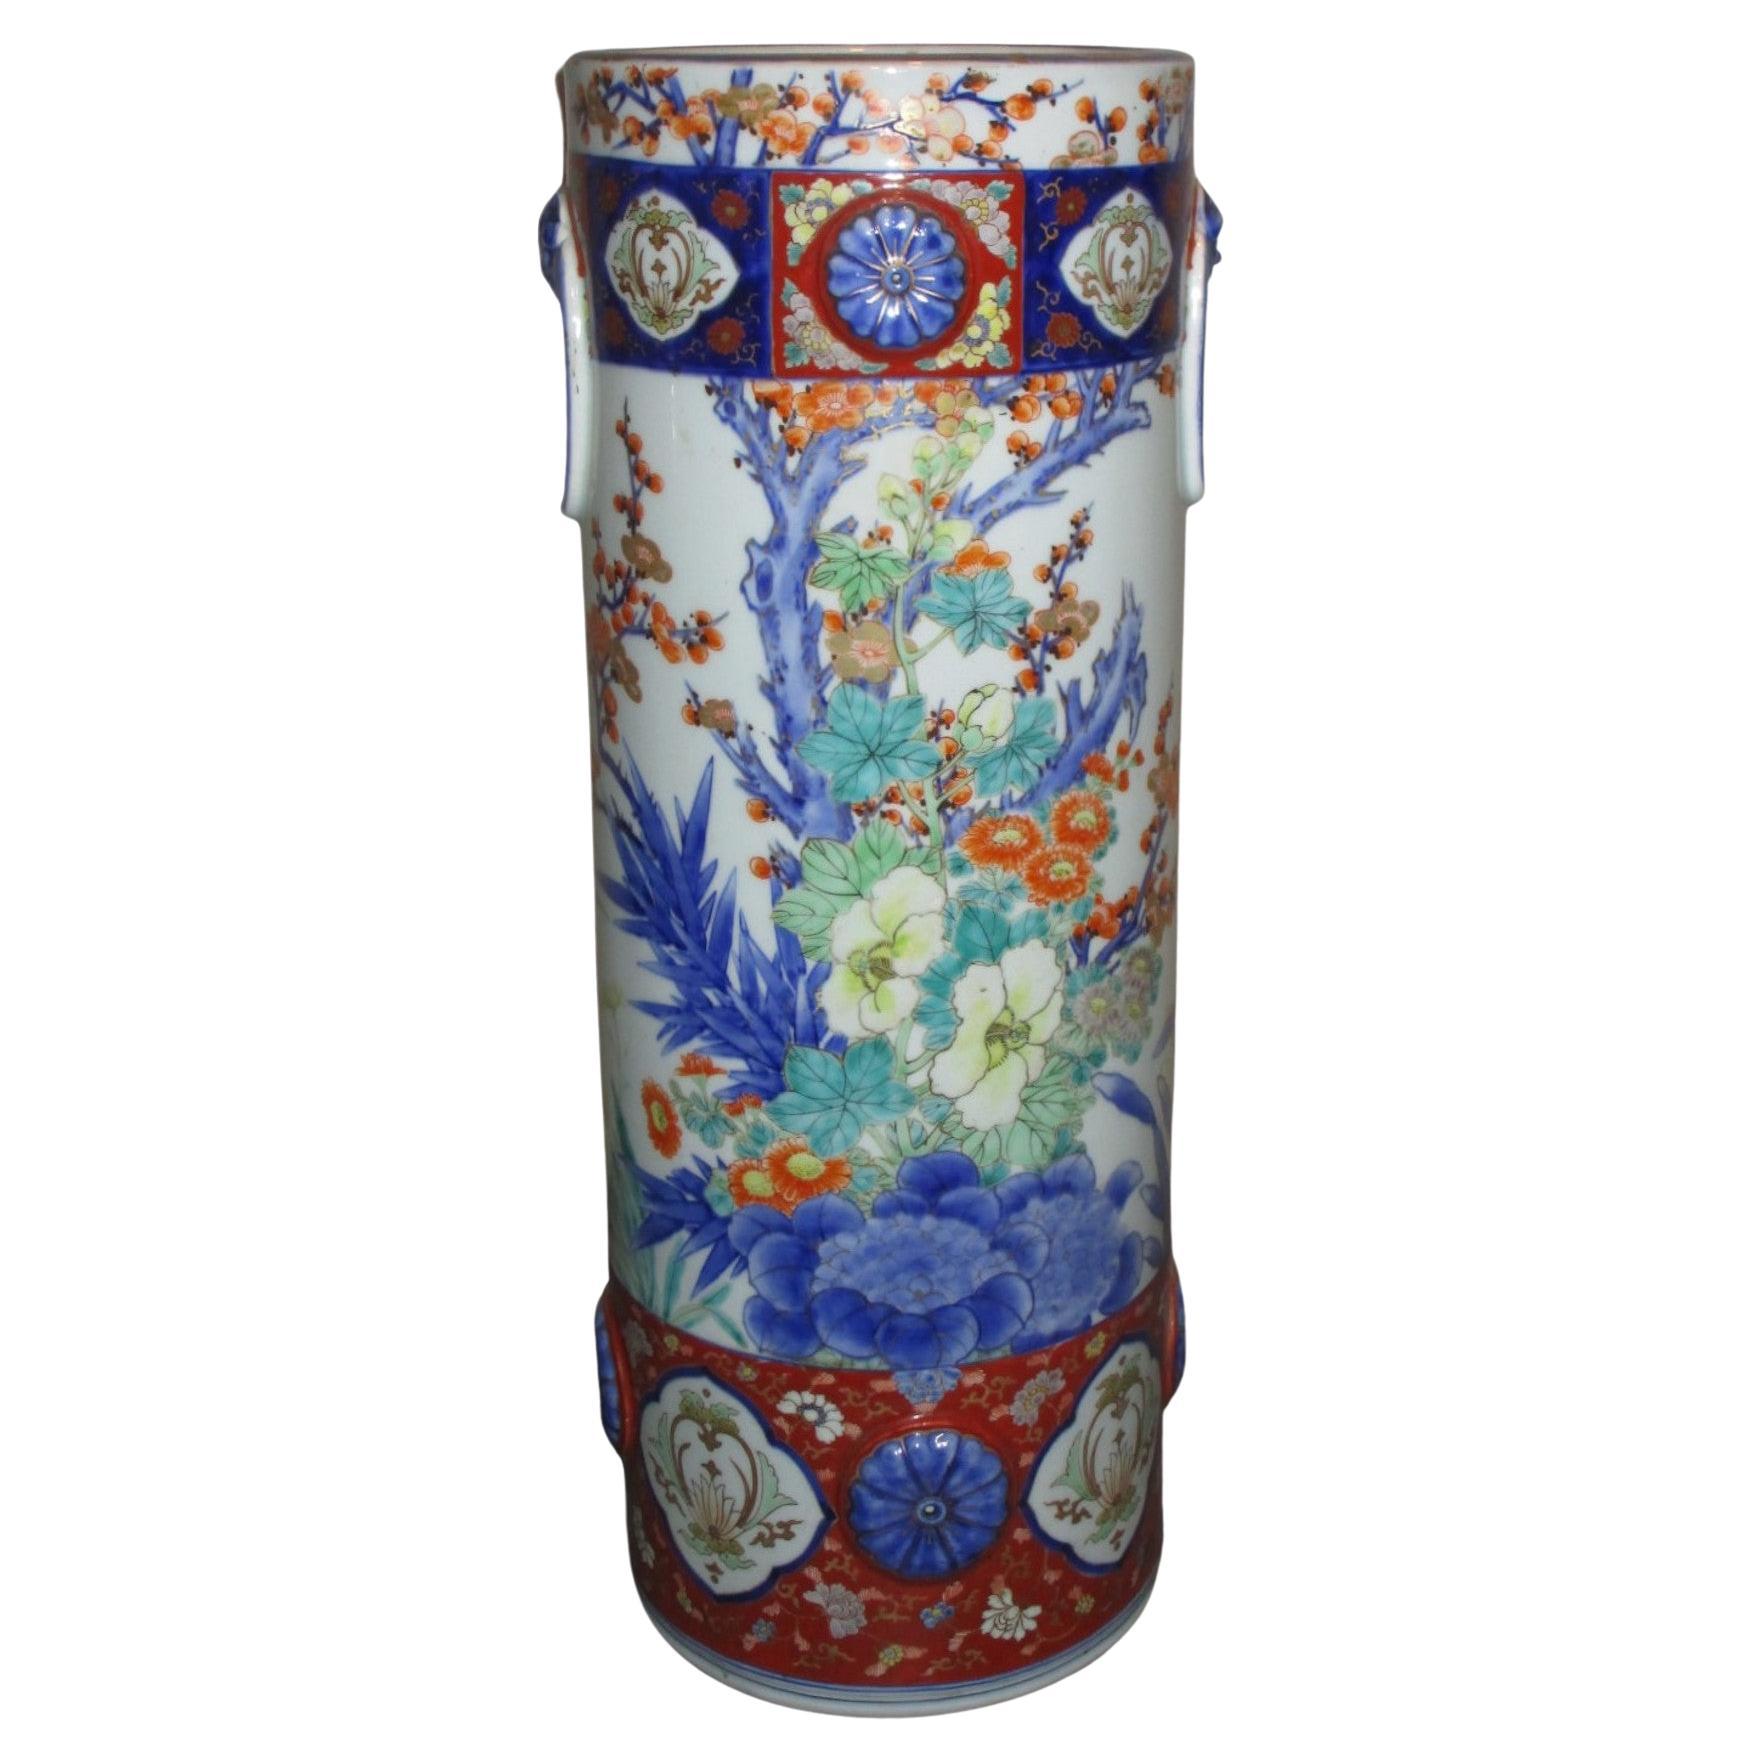 Japanese Fukagawa Meiji Period Porcelain Vase, circa 1880